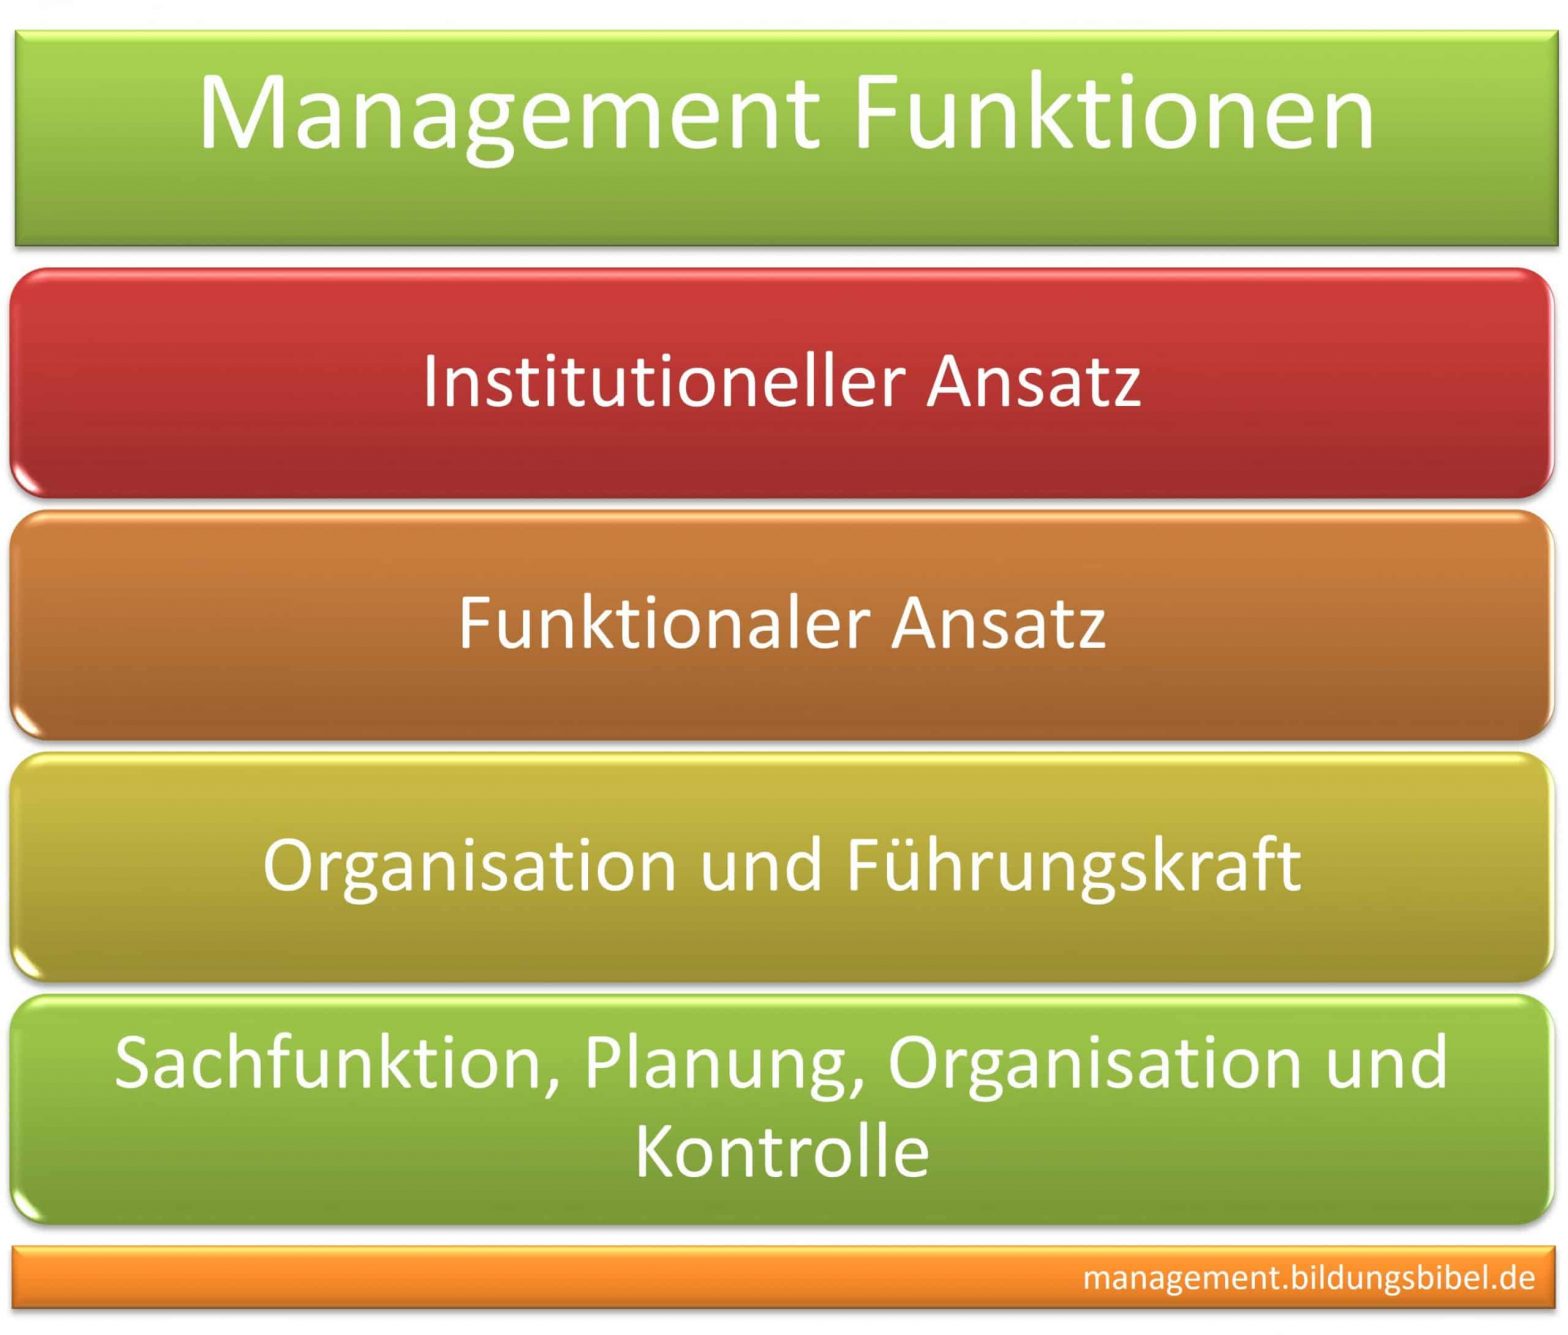 Management Funktion, institutionelle und funktionale Ansatz, Organisation, Führungskraft, Sachfunktion, Planung, Organisation u. Kontrolle.